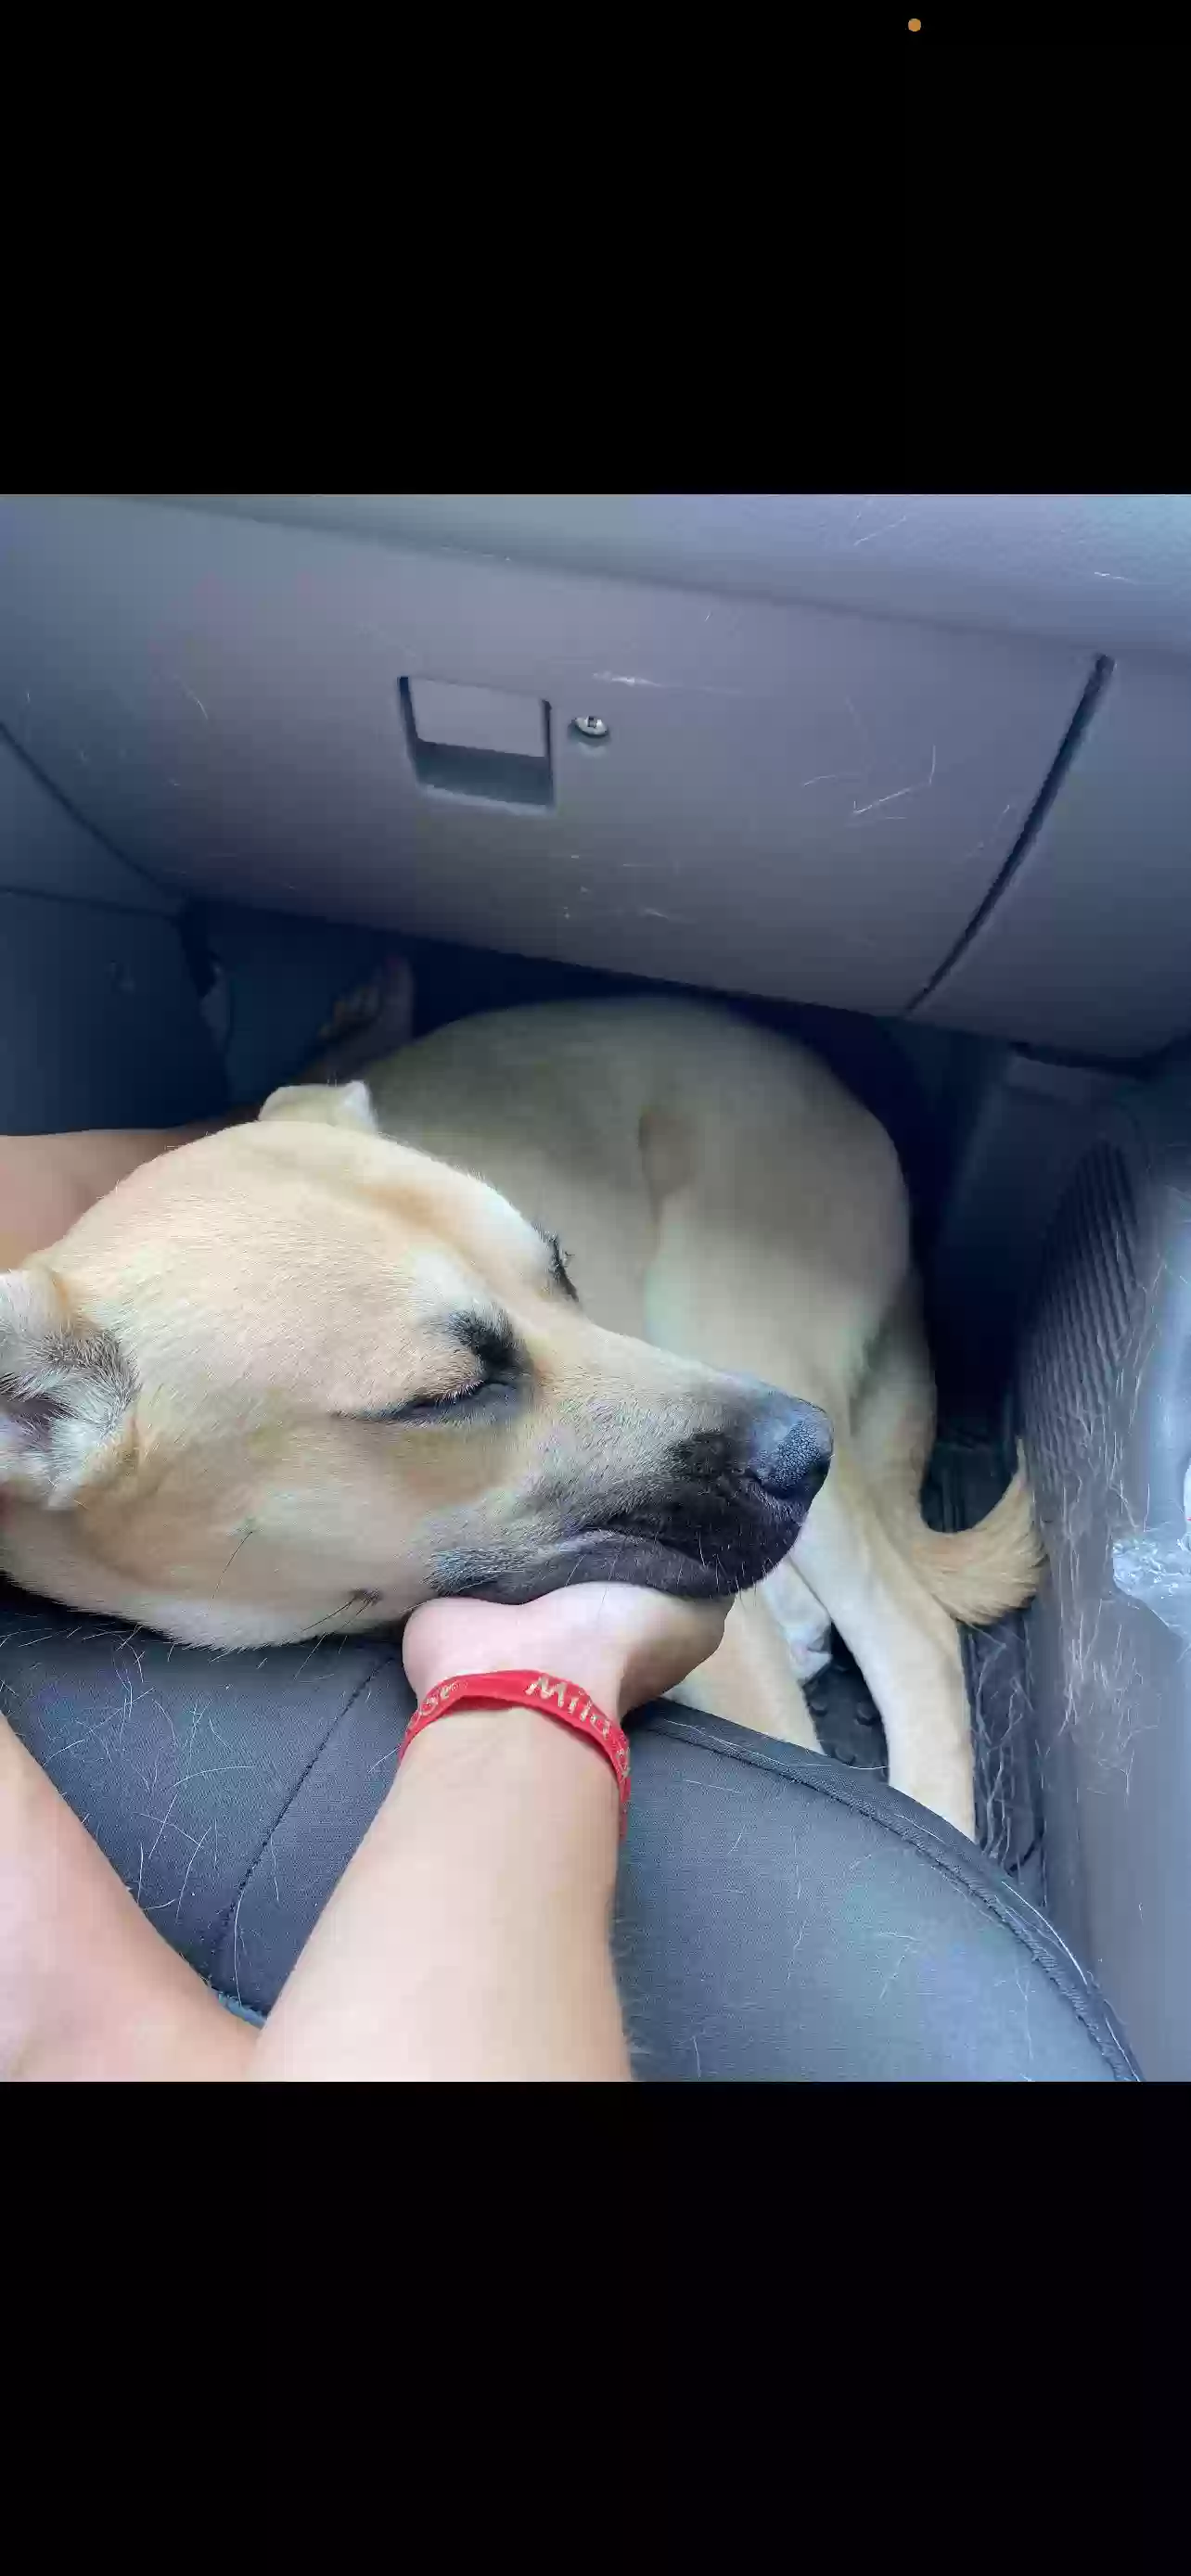 adoptable Dog in Orlando,FL named Axel